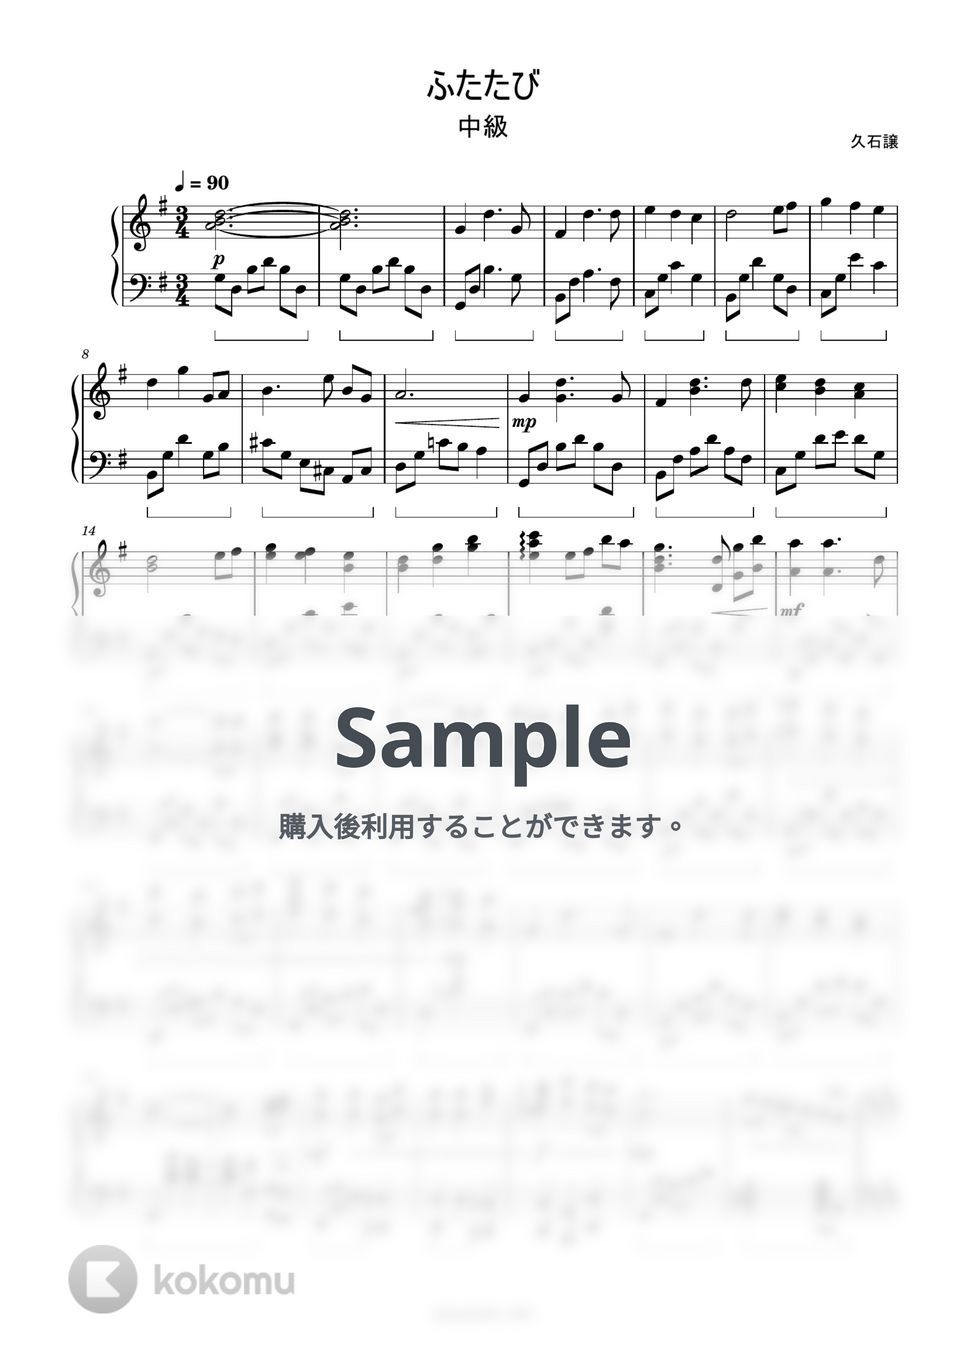 久石譲 - ふたたび by ピアノ塾